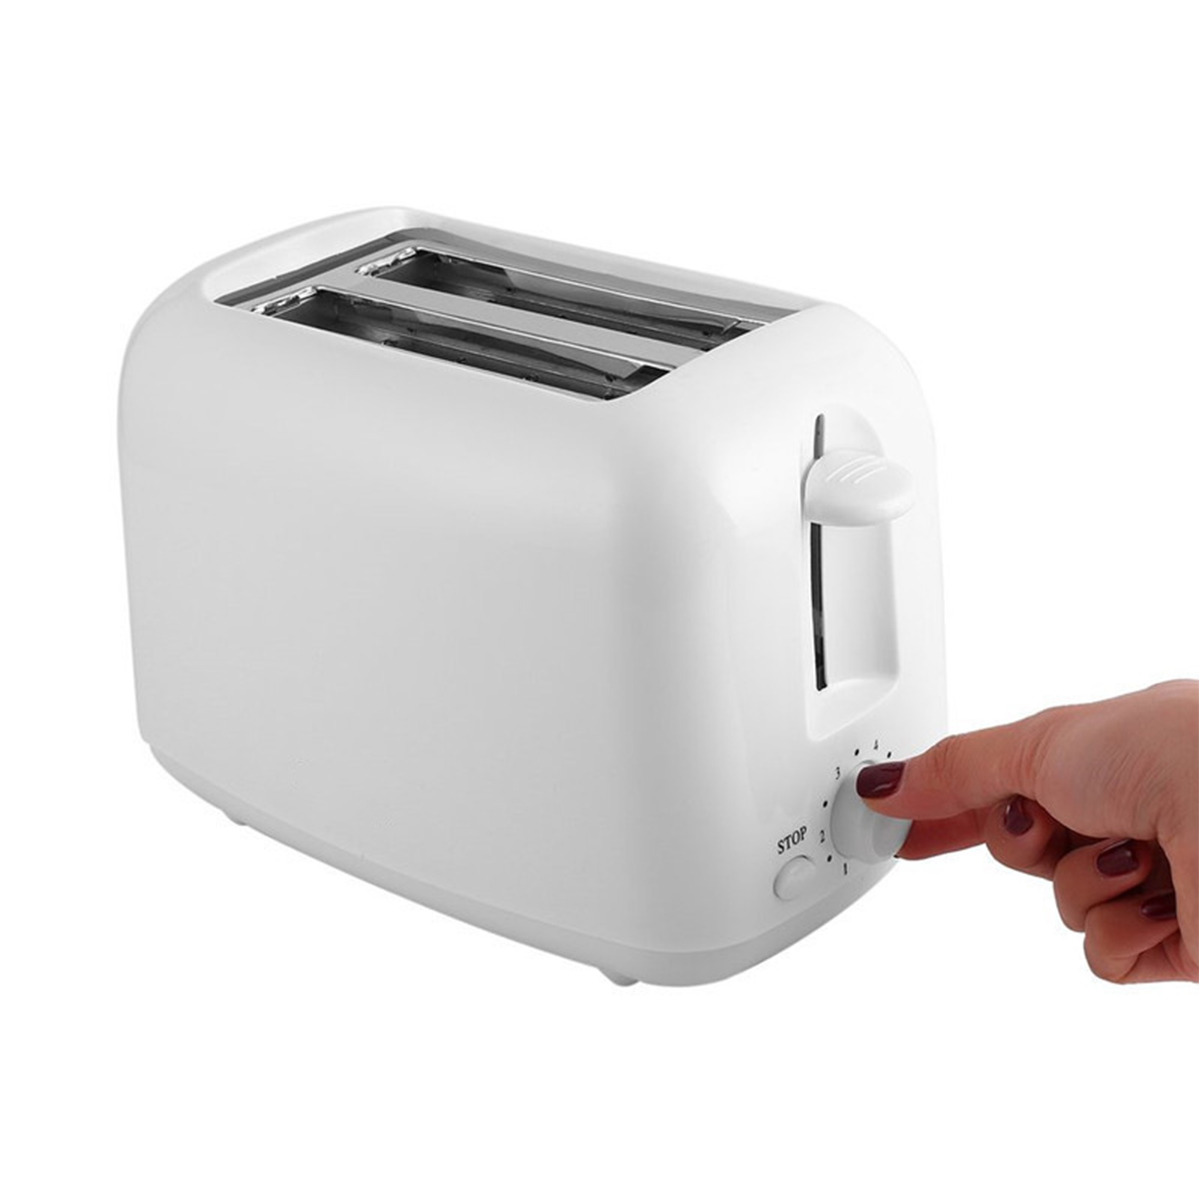 Weiß Handumdrehen Genieße Machine Schlitze: Toaster Toaster Home im Breakfast BRIGHTAKE Sandwich - das 2) Watt, (650 Frühstück perfekte